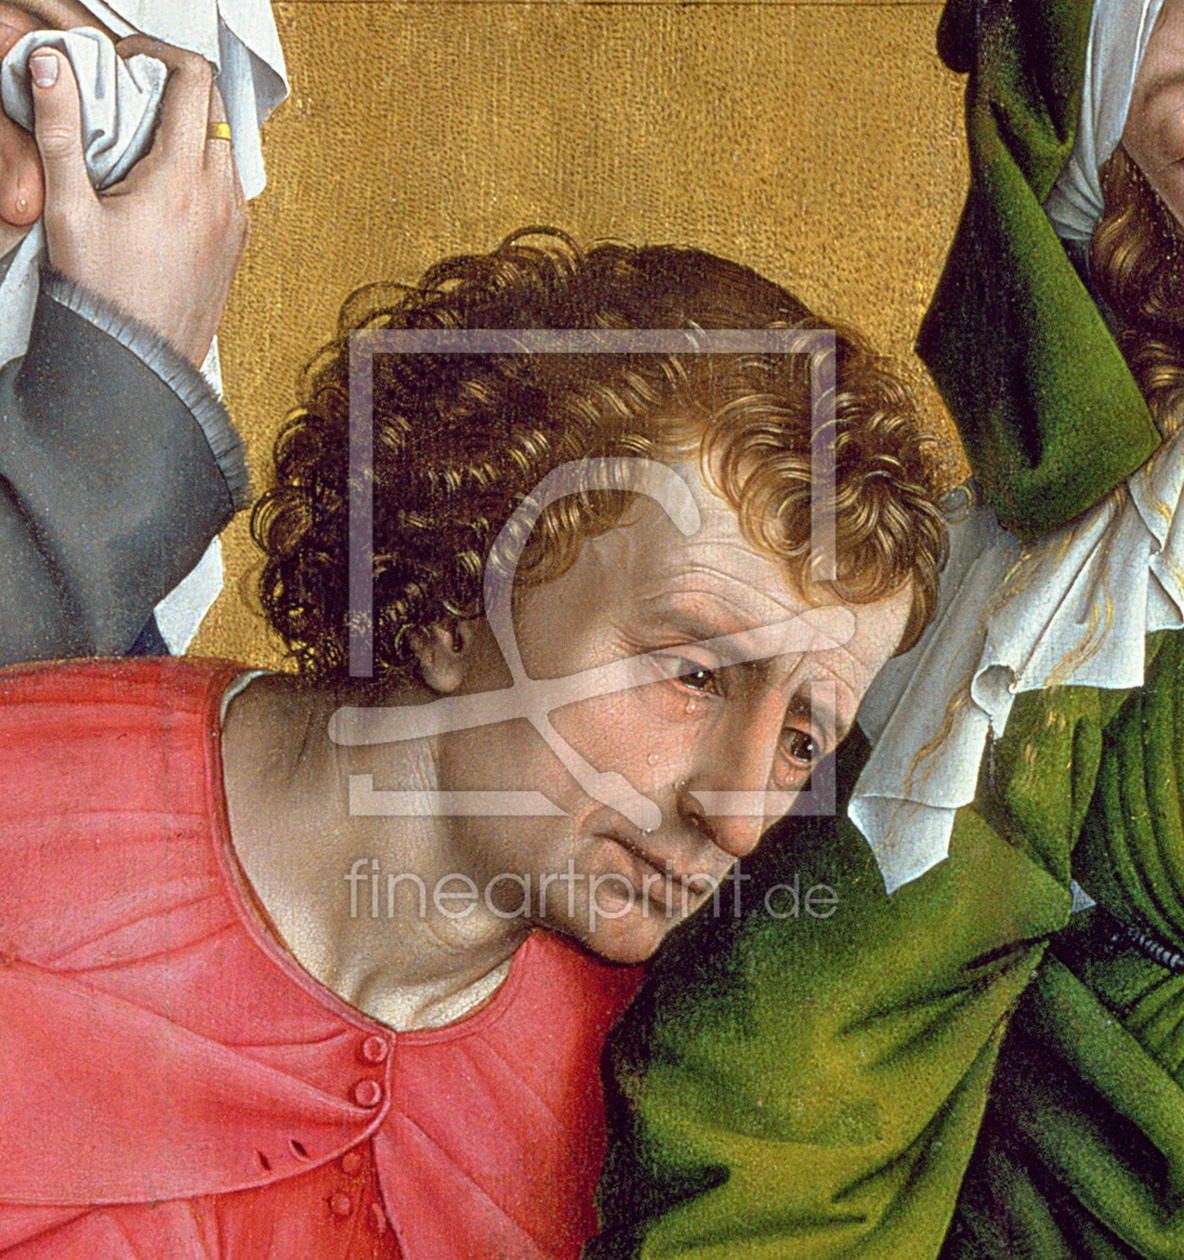 Bild-Nr.: 31002495 Descent from the Cross, c.1435 erstellt von Weyden, Rogier van der